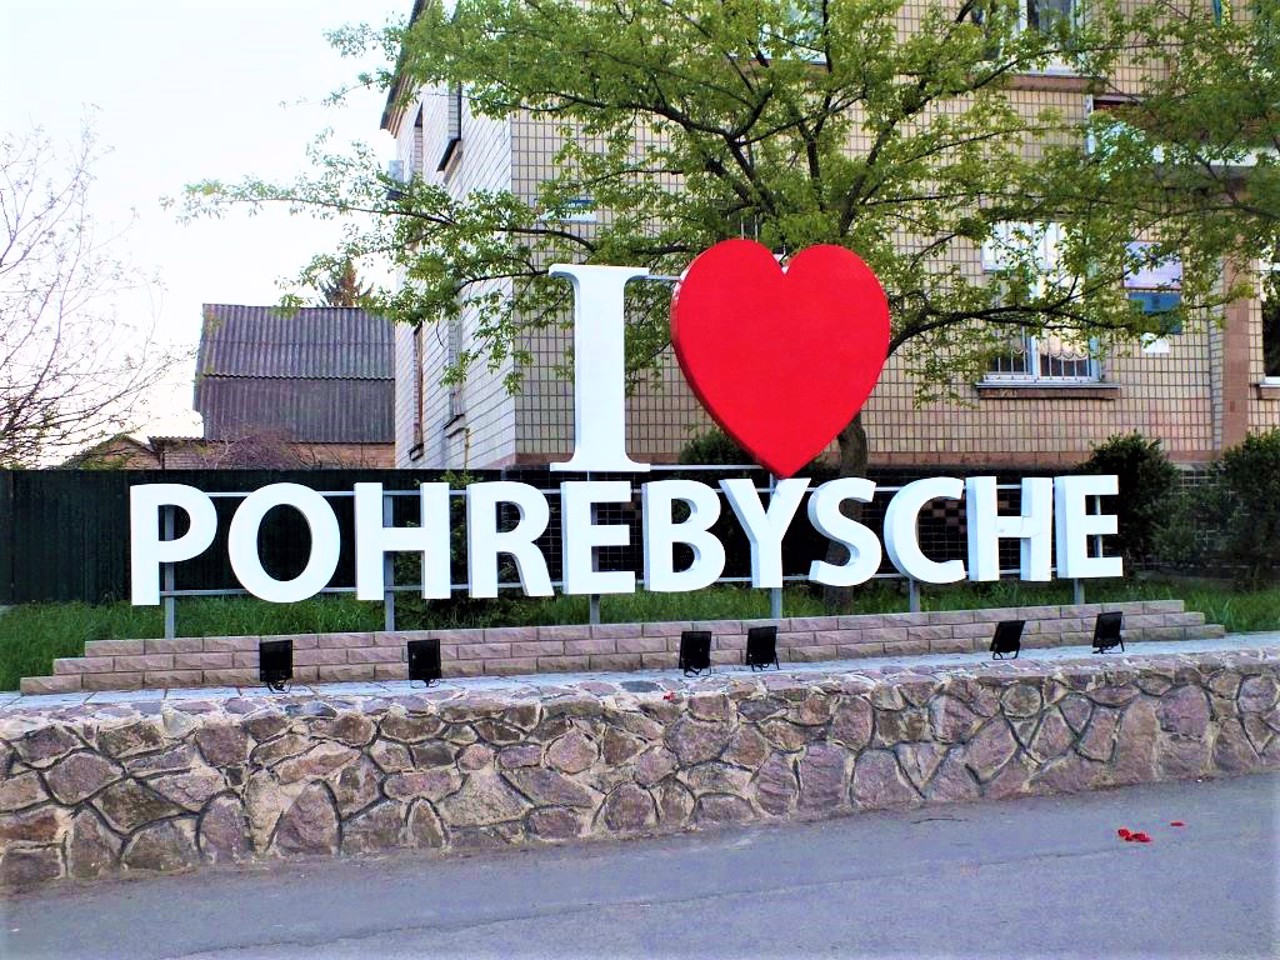 Pohrebyshche city